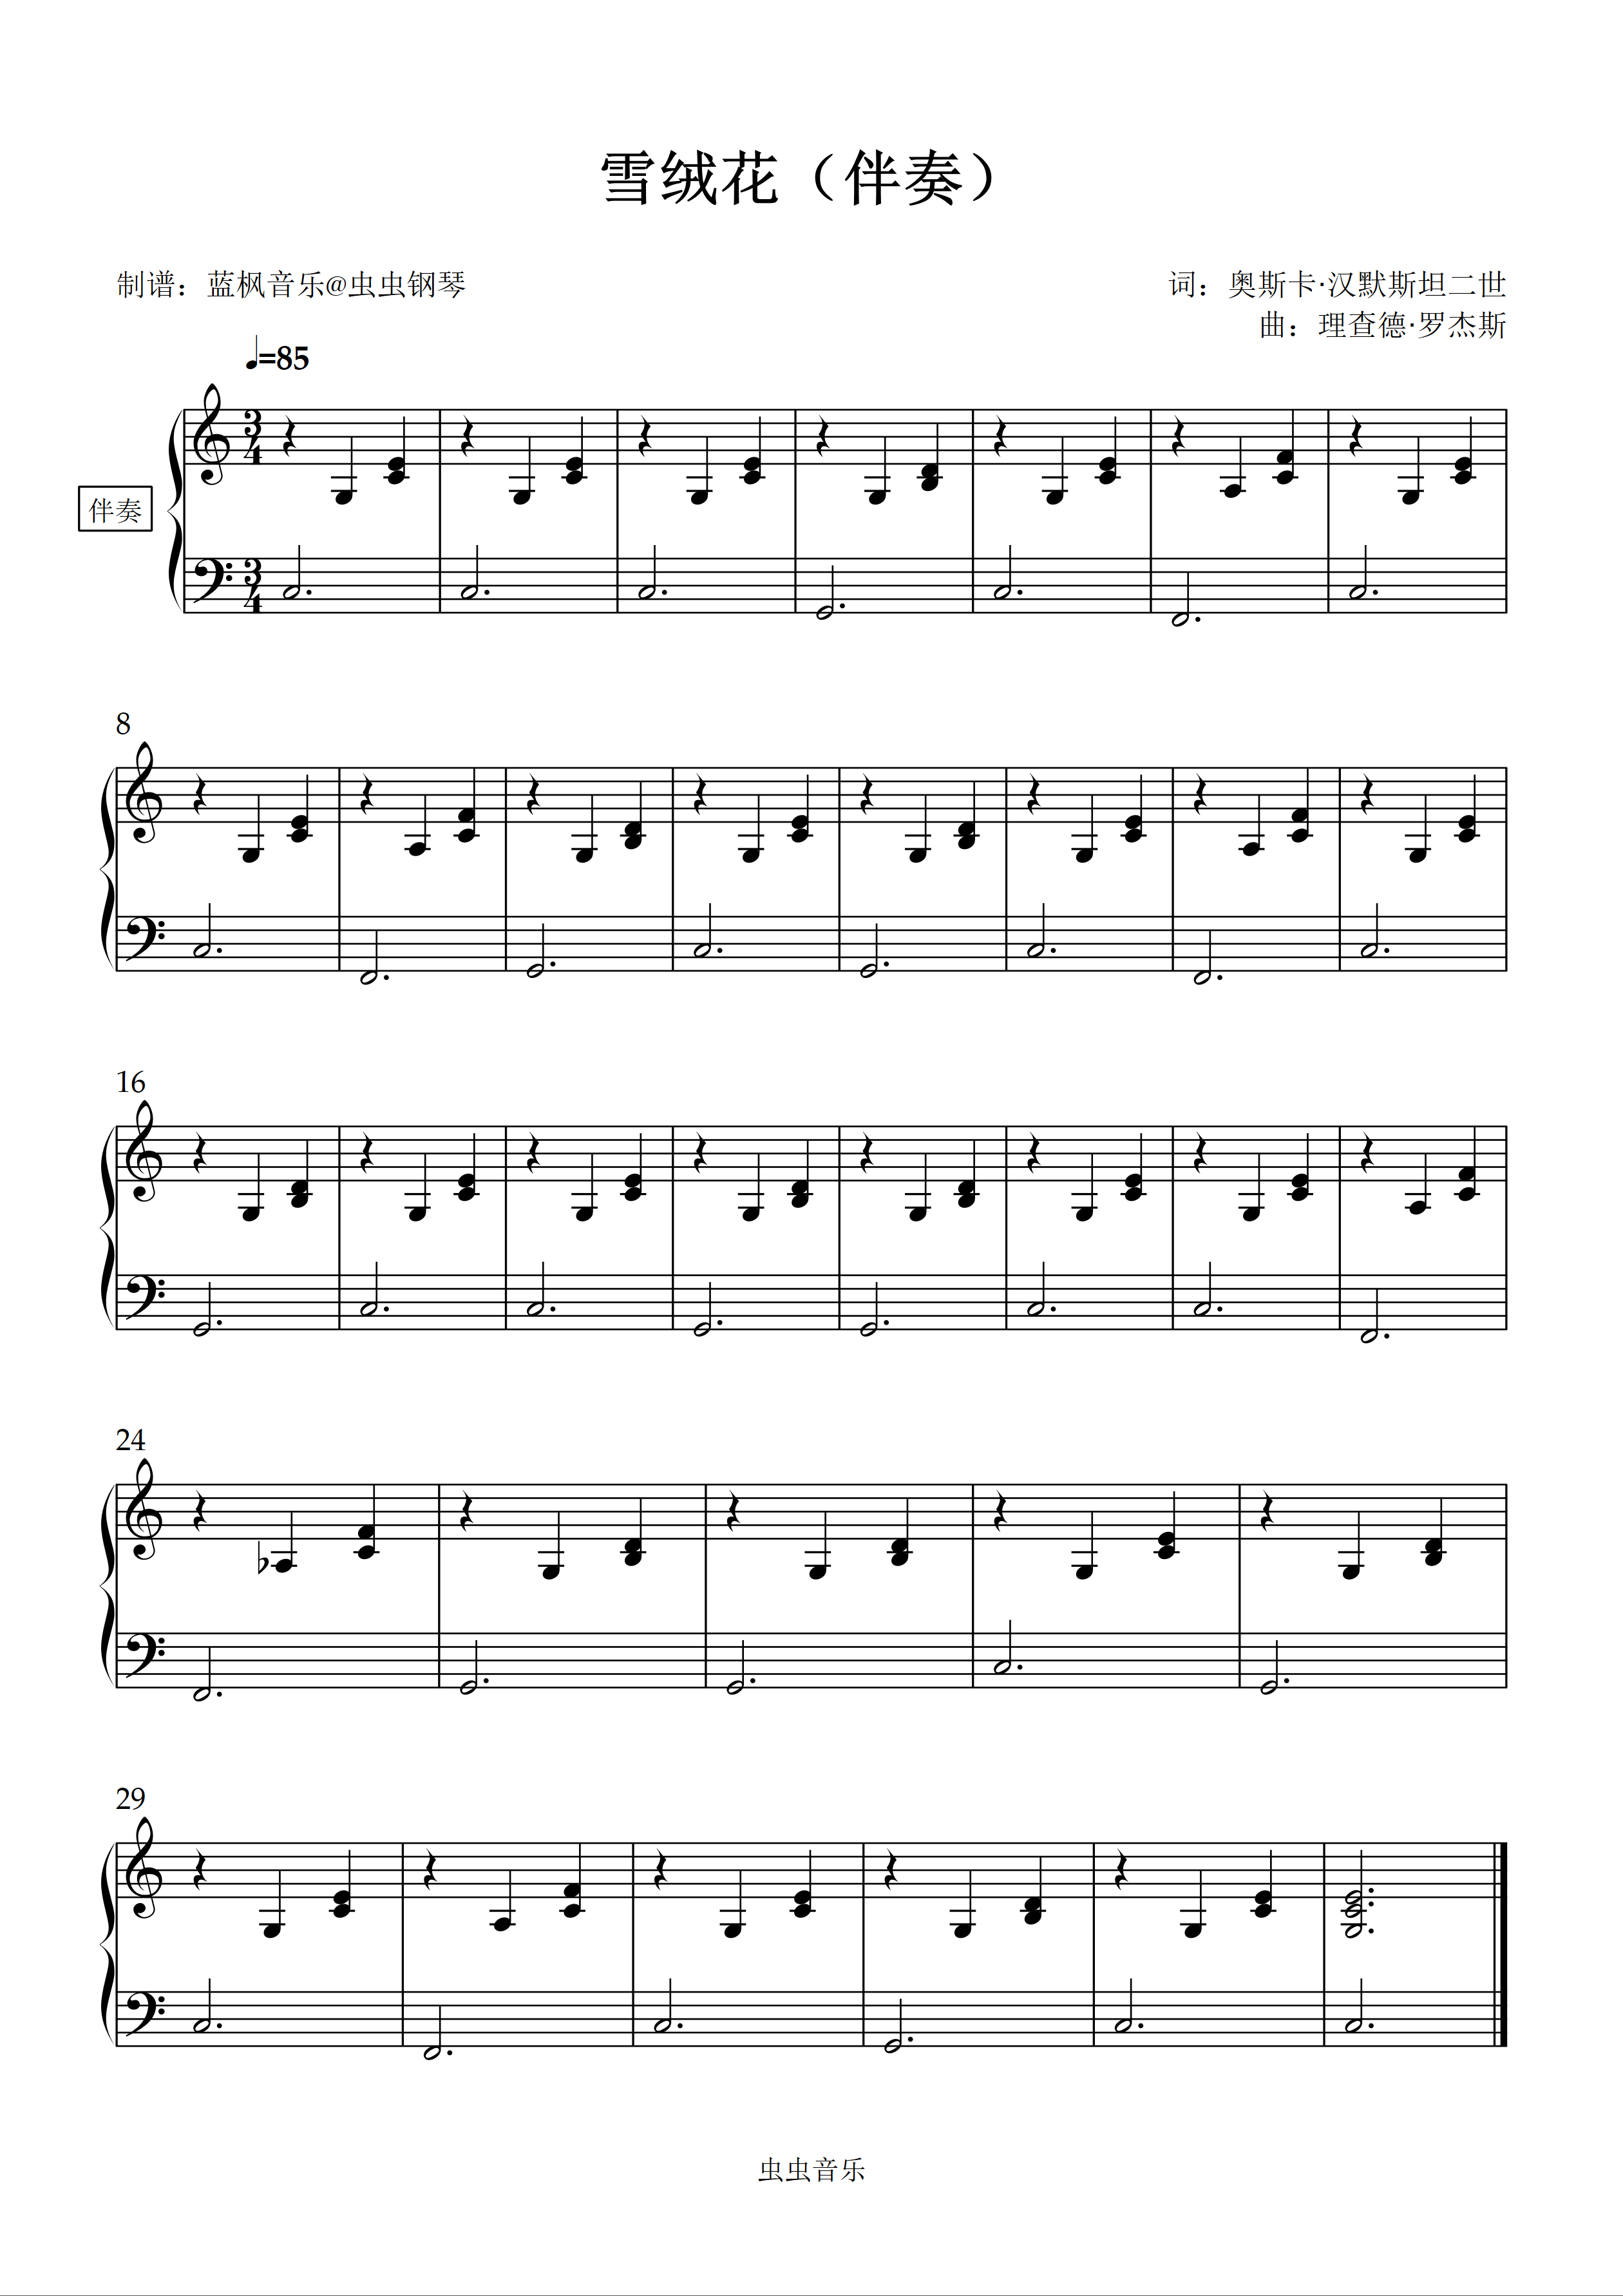 雪绒花-钢琴谱文件（五线谱、双手简谱、数字谱、Midi、PDF）免费下载